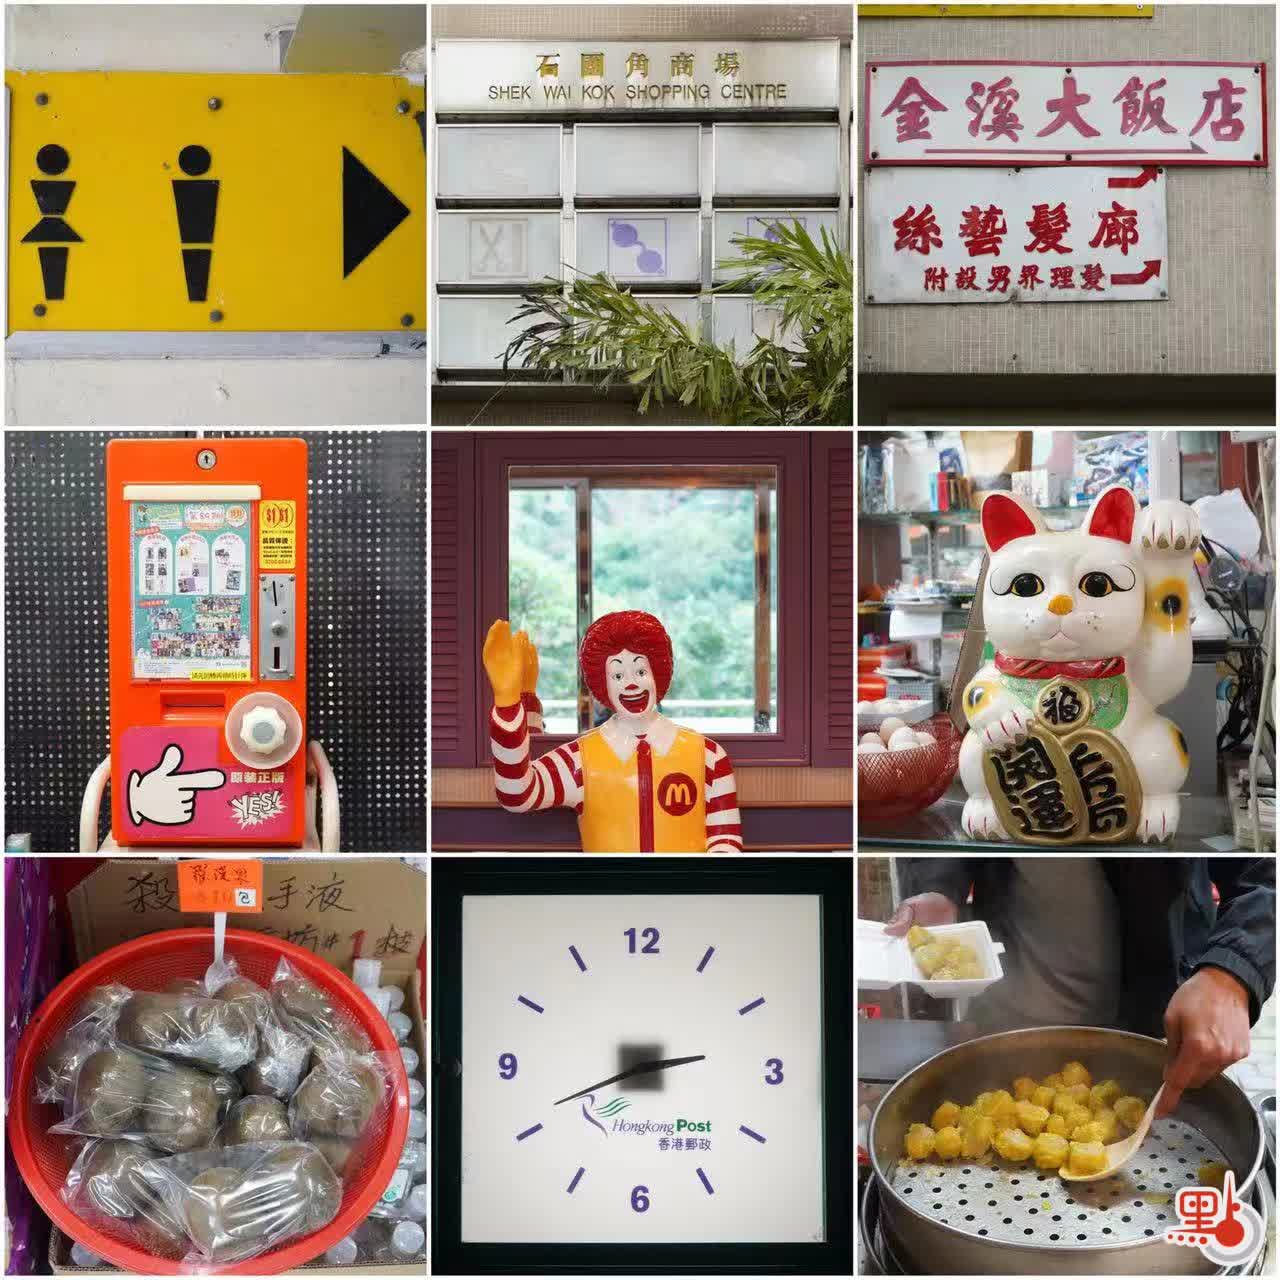 石圍角商場翻新全港唯一麥當勞叔叔塑像或消失- 香港- 香港文匯網